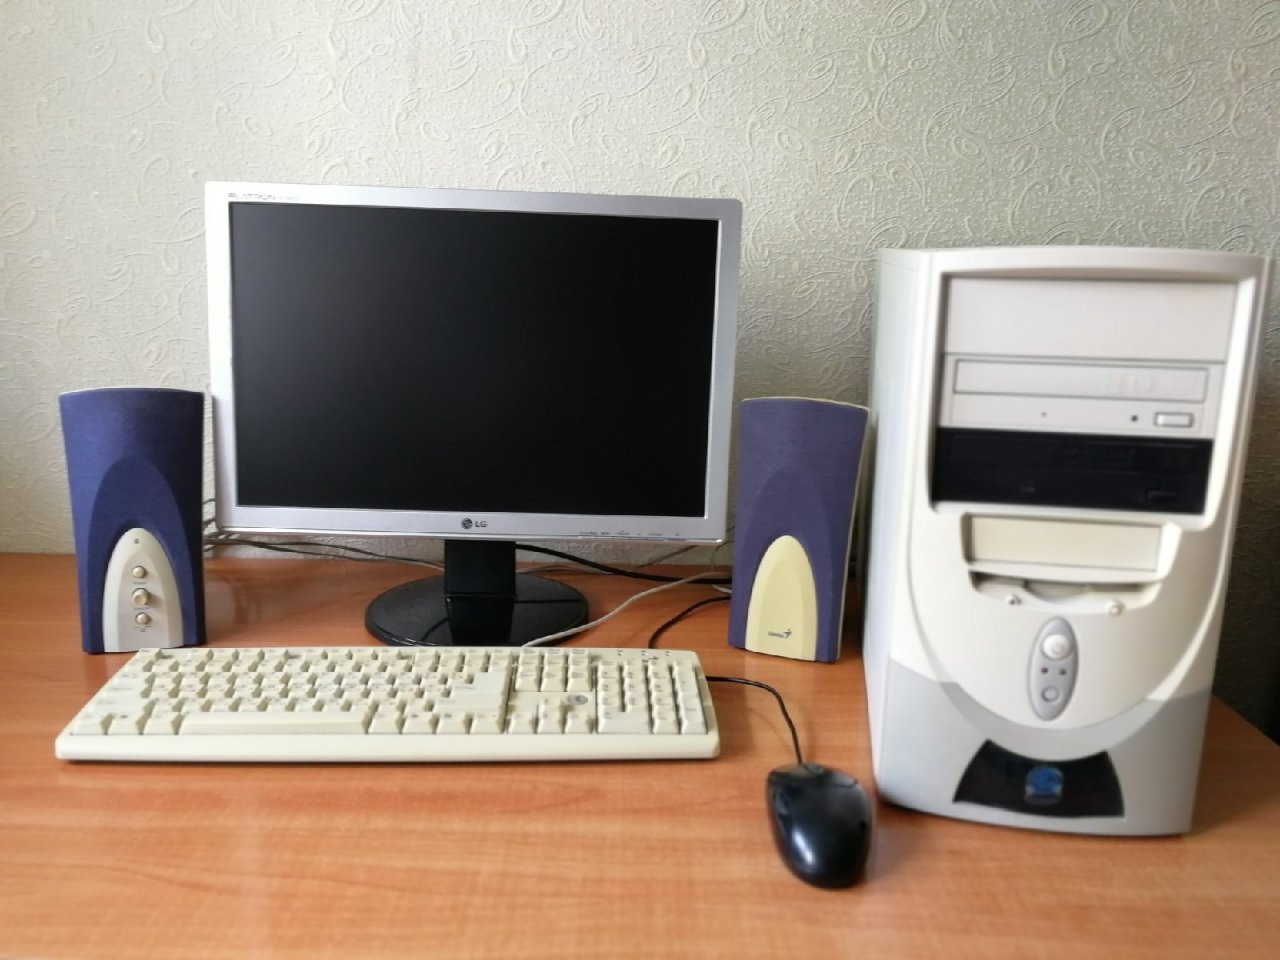 Монитор мыши. Системный блок с клавиатурой и мышью. Компьютер монитор клавиатура мышь. ПК С монитором и клавиатурой и мышкой. Компьютер монитор мышь клавиатура системный блок.